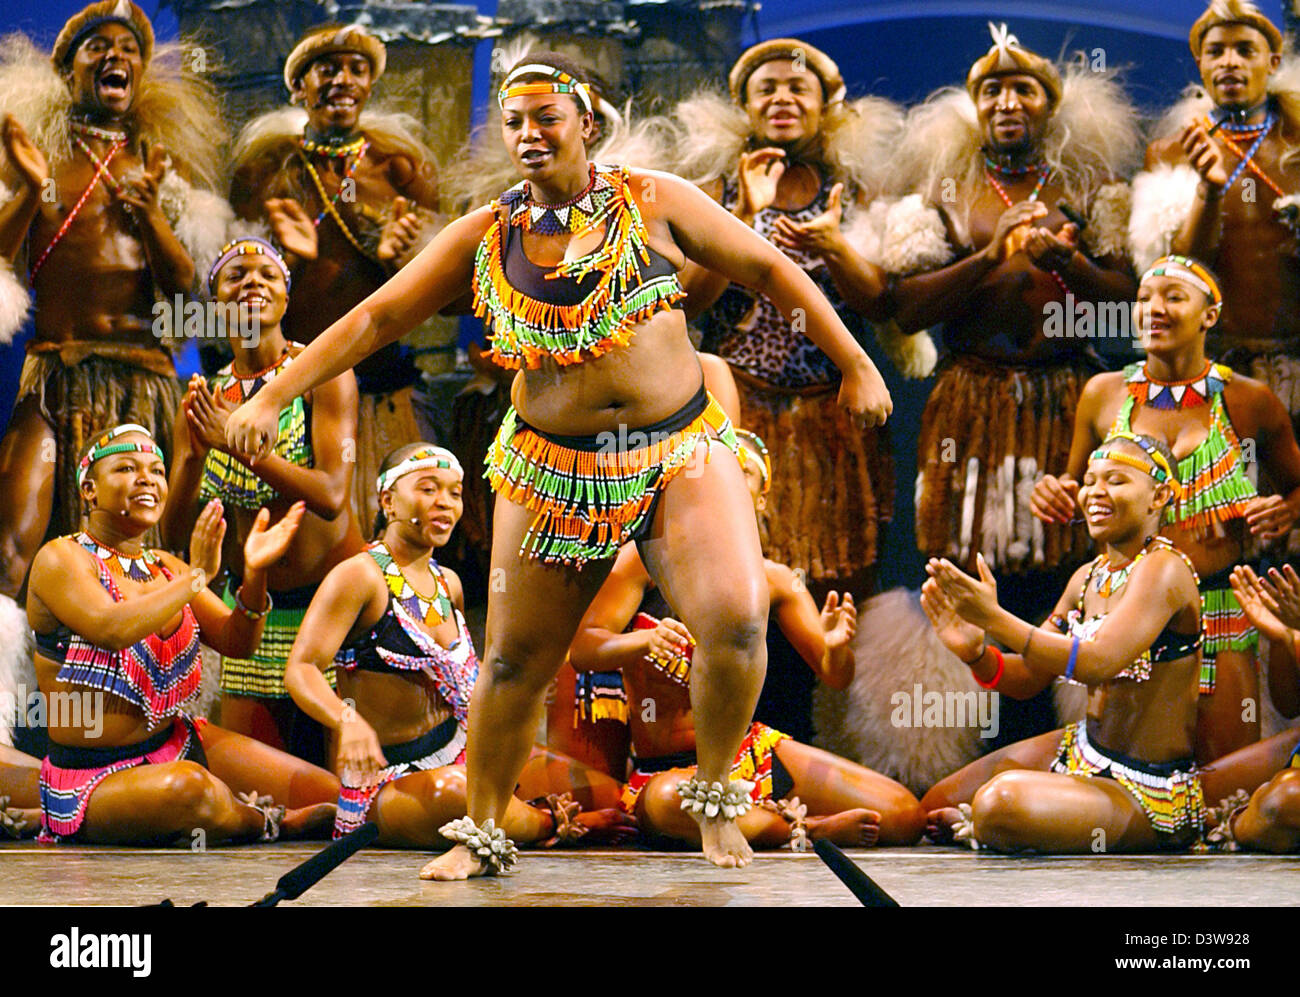 Die energetischen South African Show "UMOJA - der Geist der Zusammengehörigkeit" Tänzer während der Generalprobe in Düsseldorf, Mittwoch, 24. Januar 2007. Die Show läuft in Düsseldorf vom 23 Januar bis 4. Februar 2007. Foto: Horst Ossinger Stockfoto